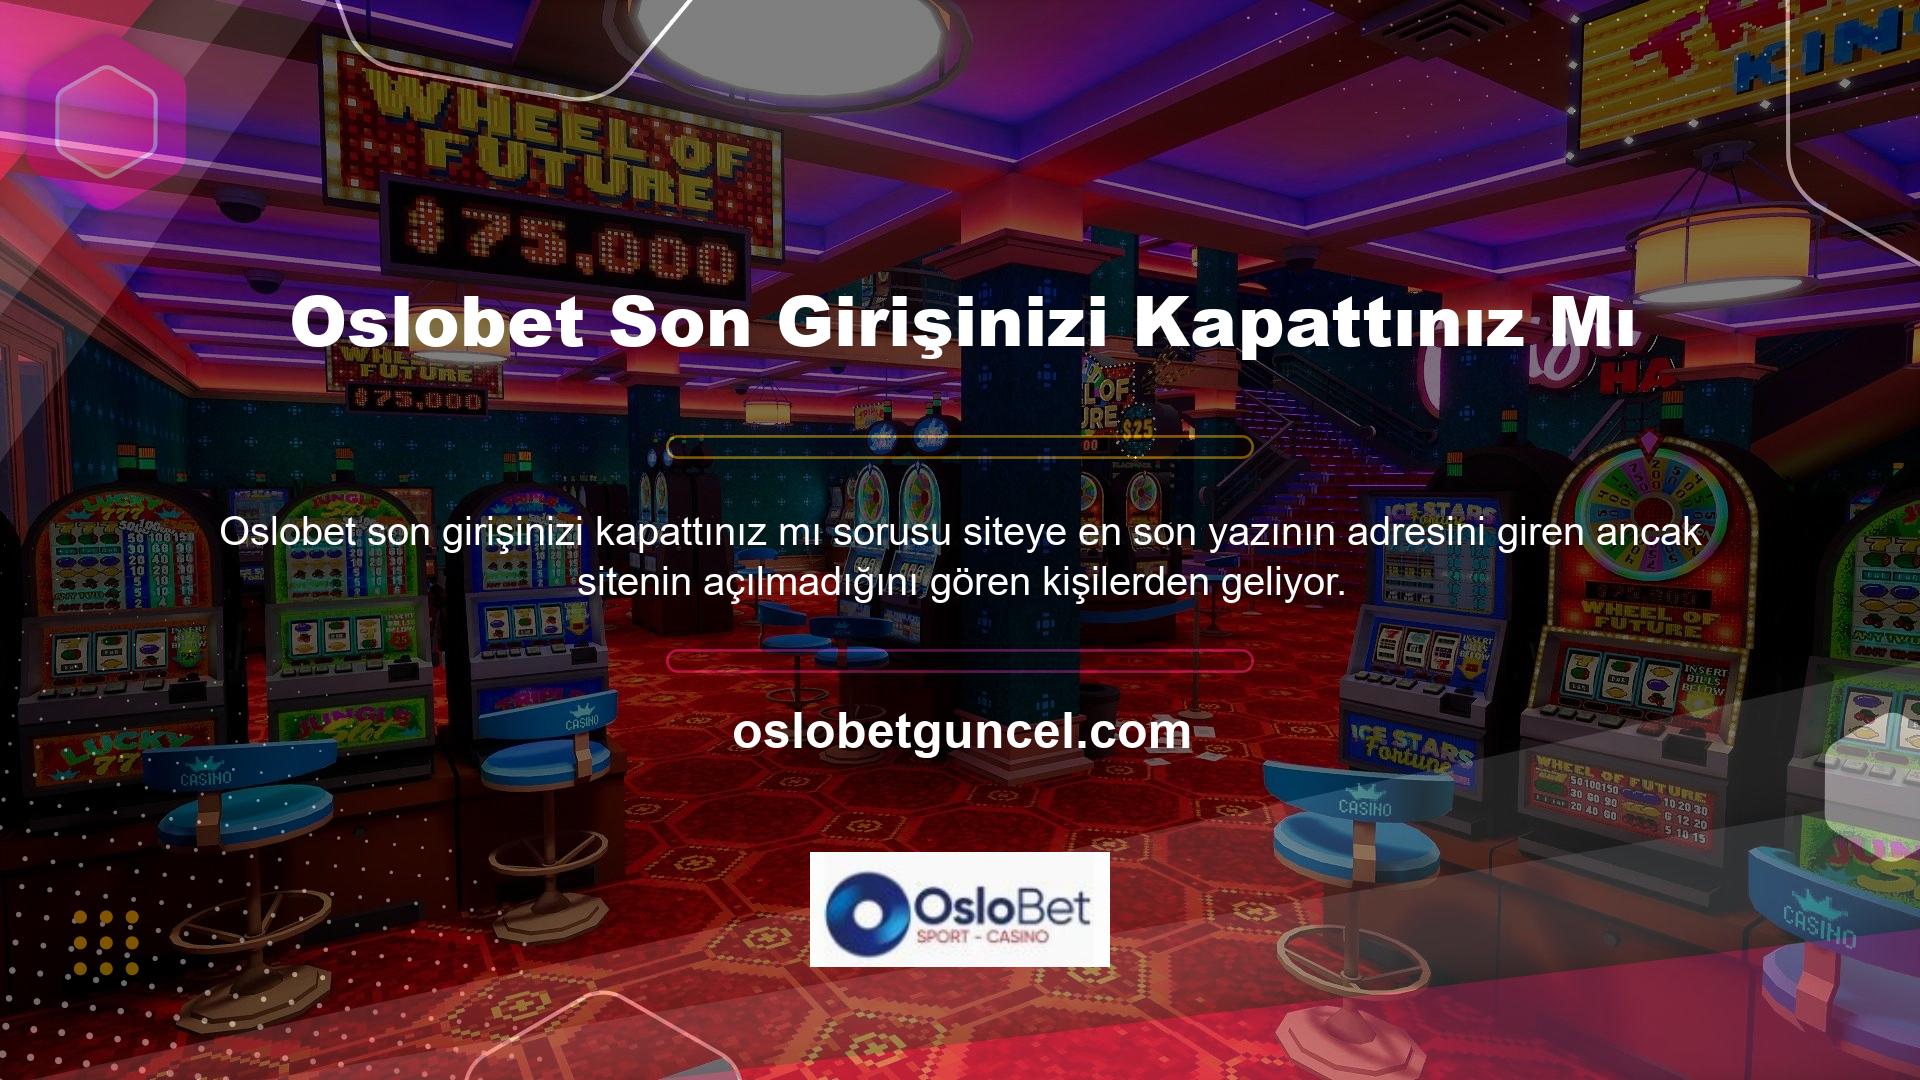 Oslobet, Türkiye'deki yasa dışı casino sitelerinden biri olup, BTK veya TİB tarafından araştırılabilir